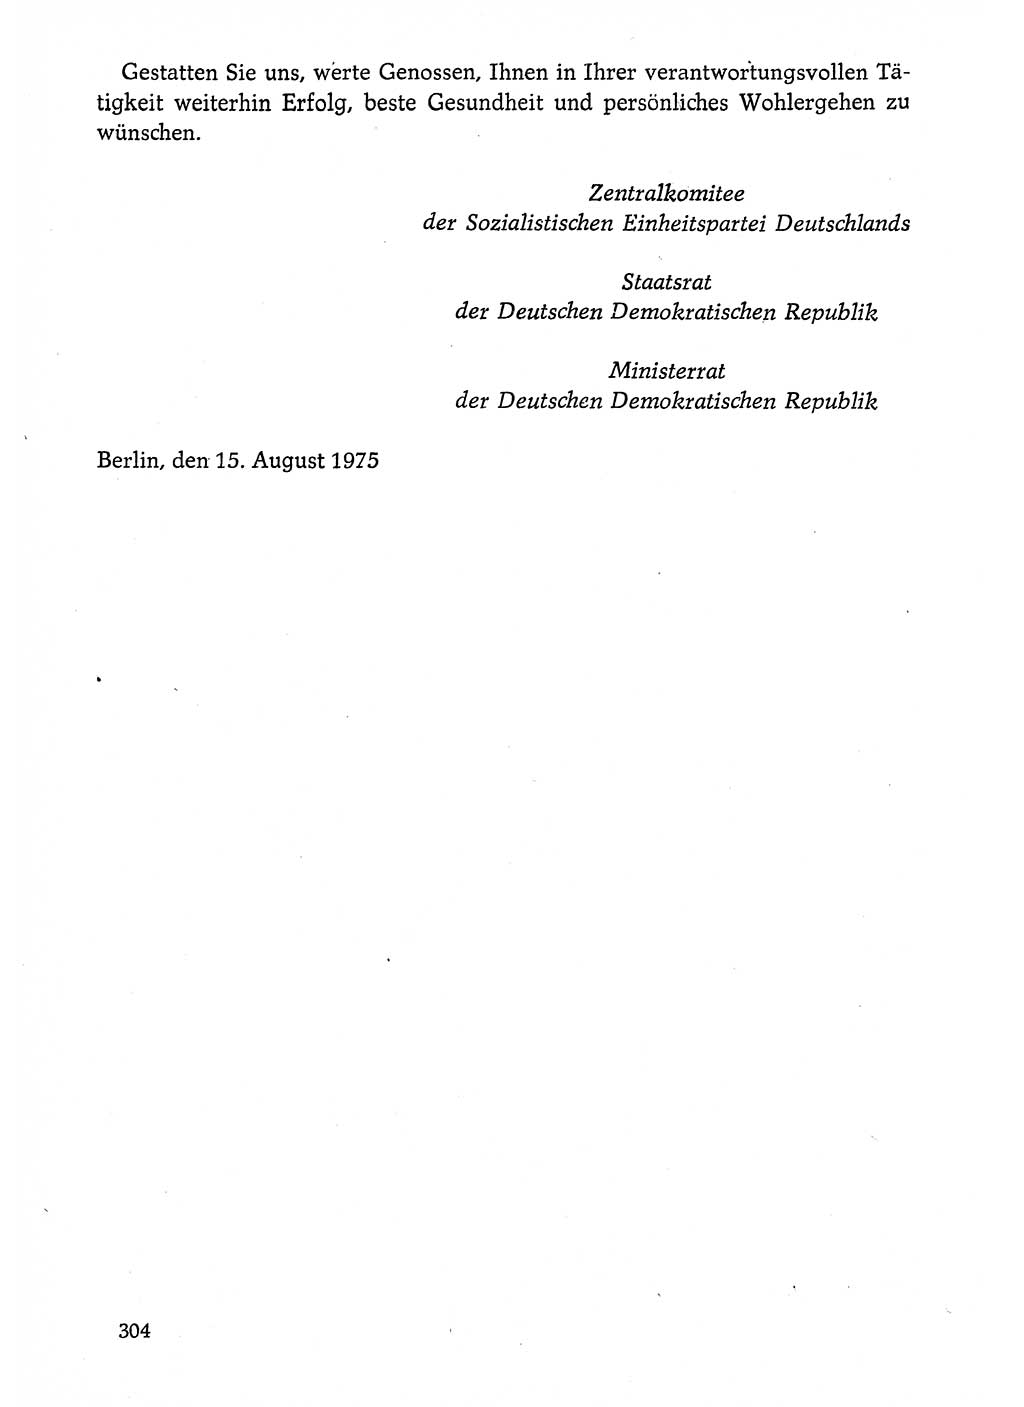 Dokumente der Sozialistischen Einheitspartei Deutschlands (SED) [Deutsche Demokratische Republik (DDR)] 1974-1975, Seite 304 (Dok. SED DDR 1978, Bd. ⅩⅤ, S. 304)